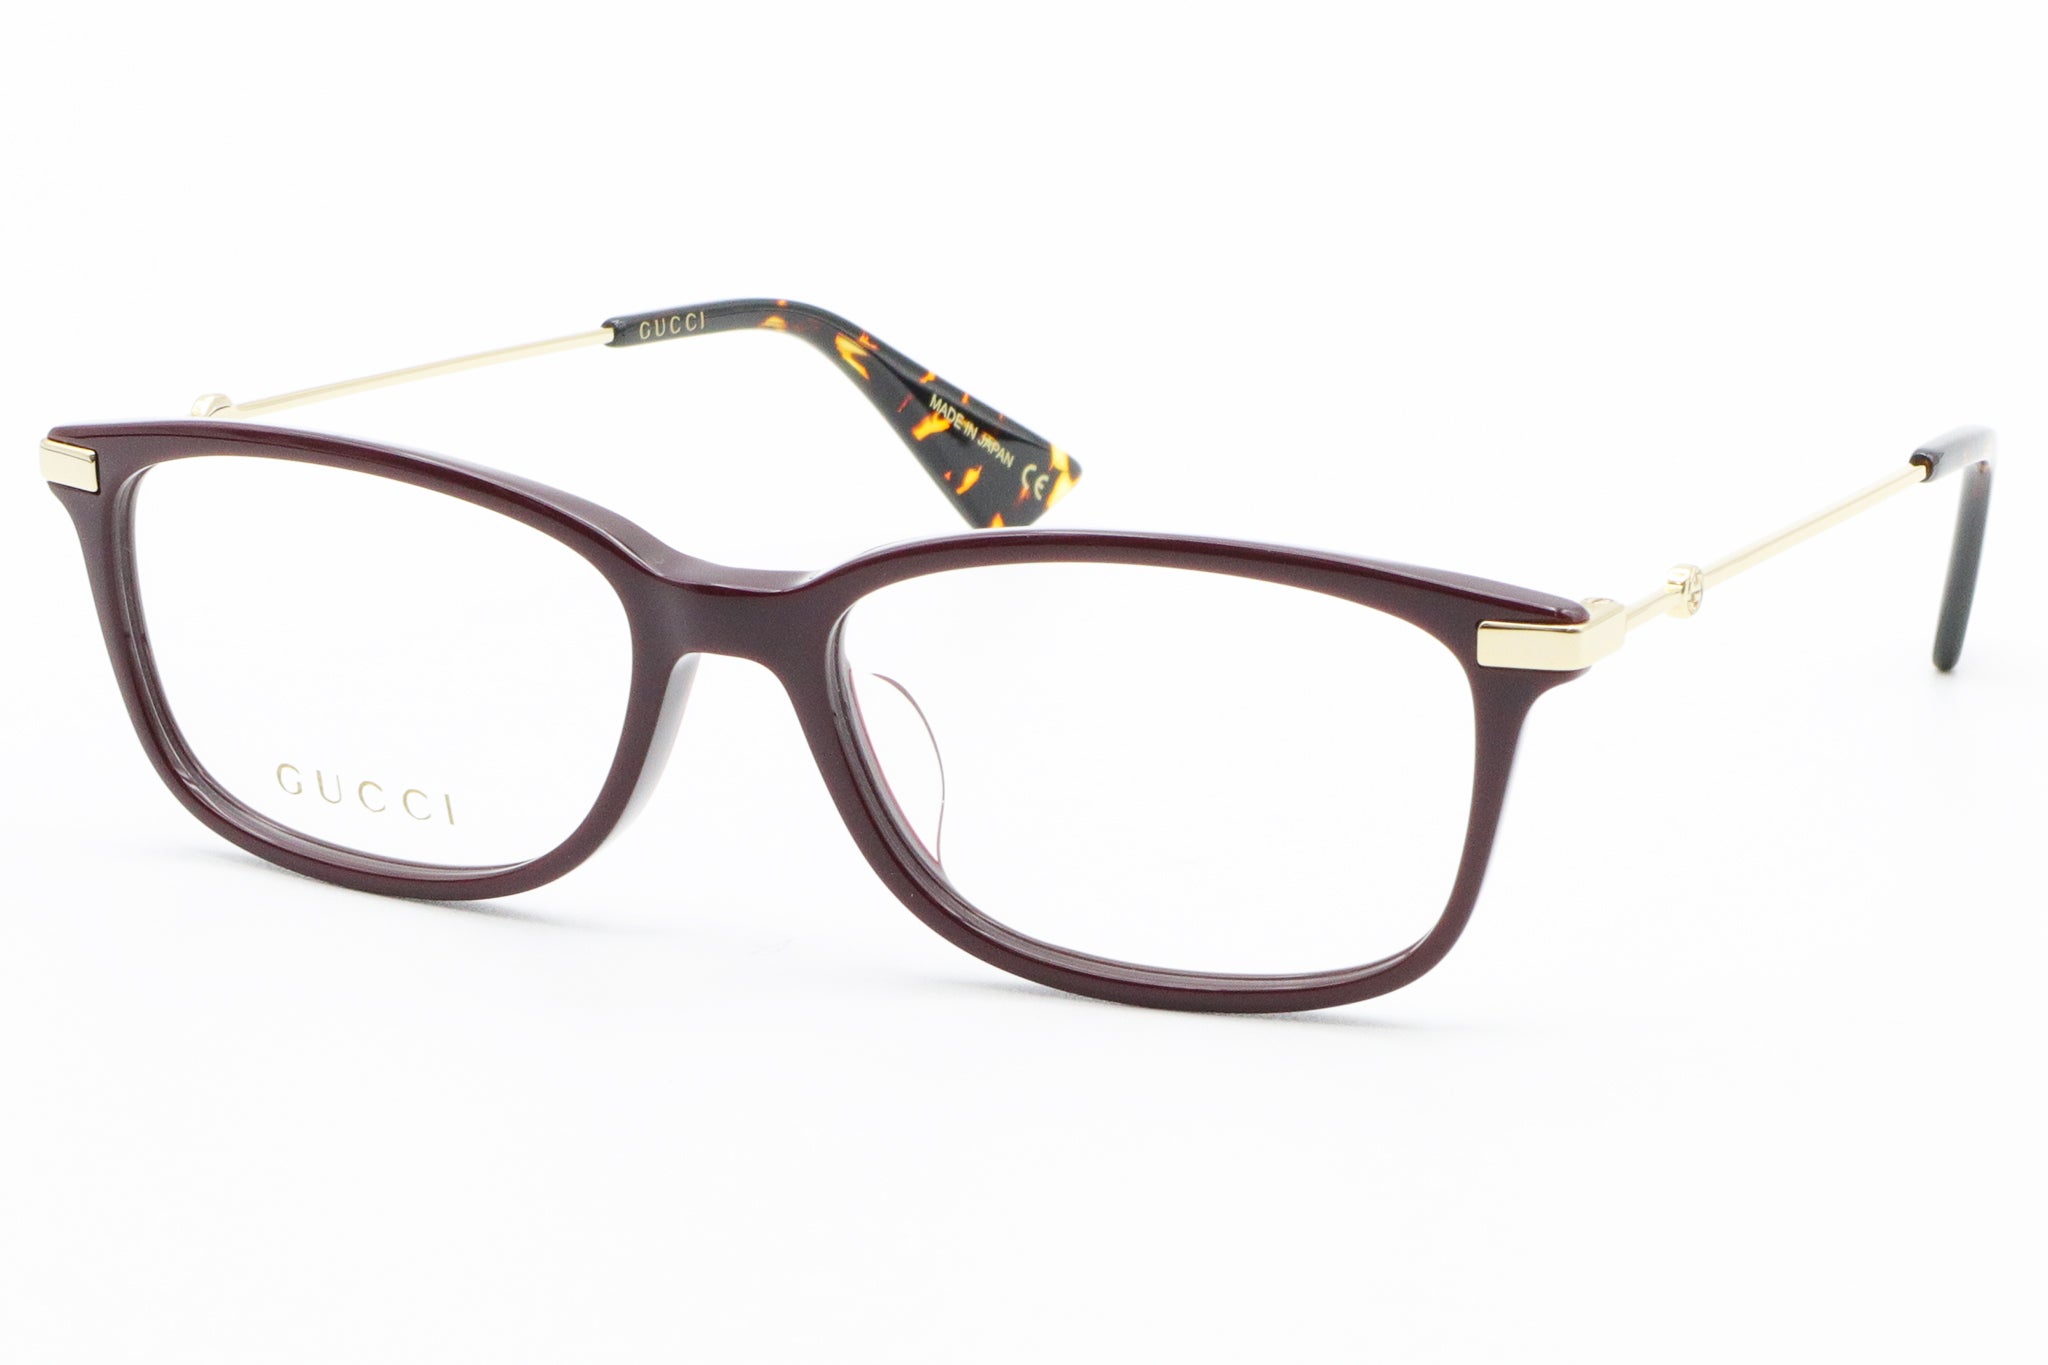 グッチ メガネ 眼鏡 GUCCI GG0519OA 005 比較対照価格55,000 円 :u-gu8